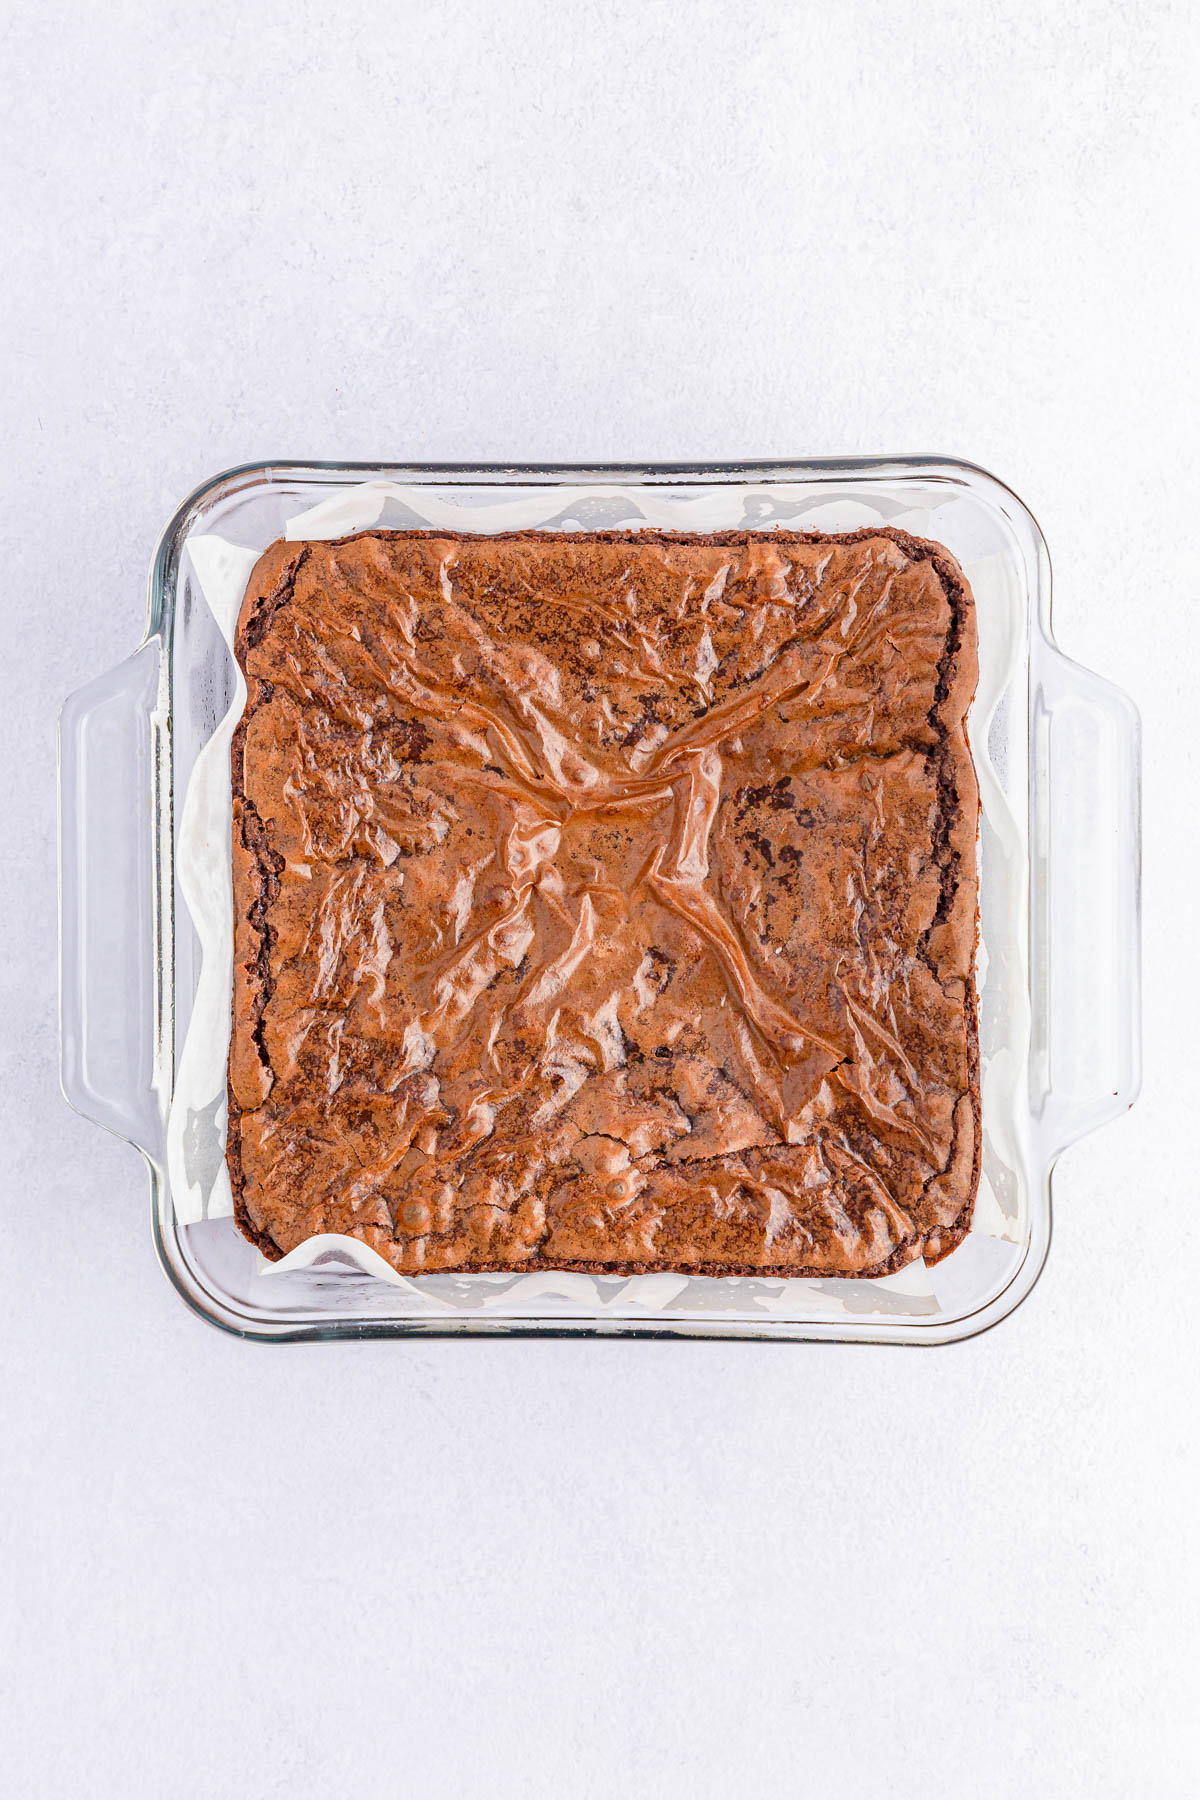 Baked brownies in square pan